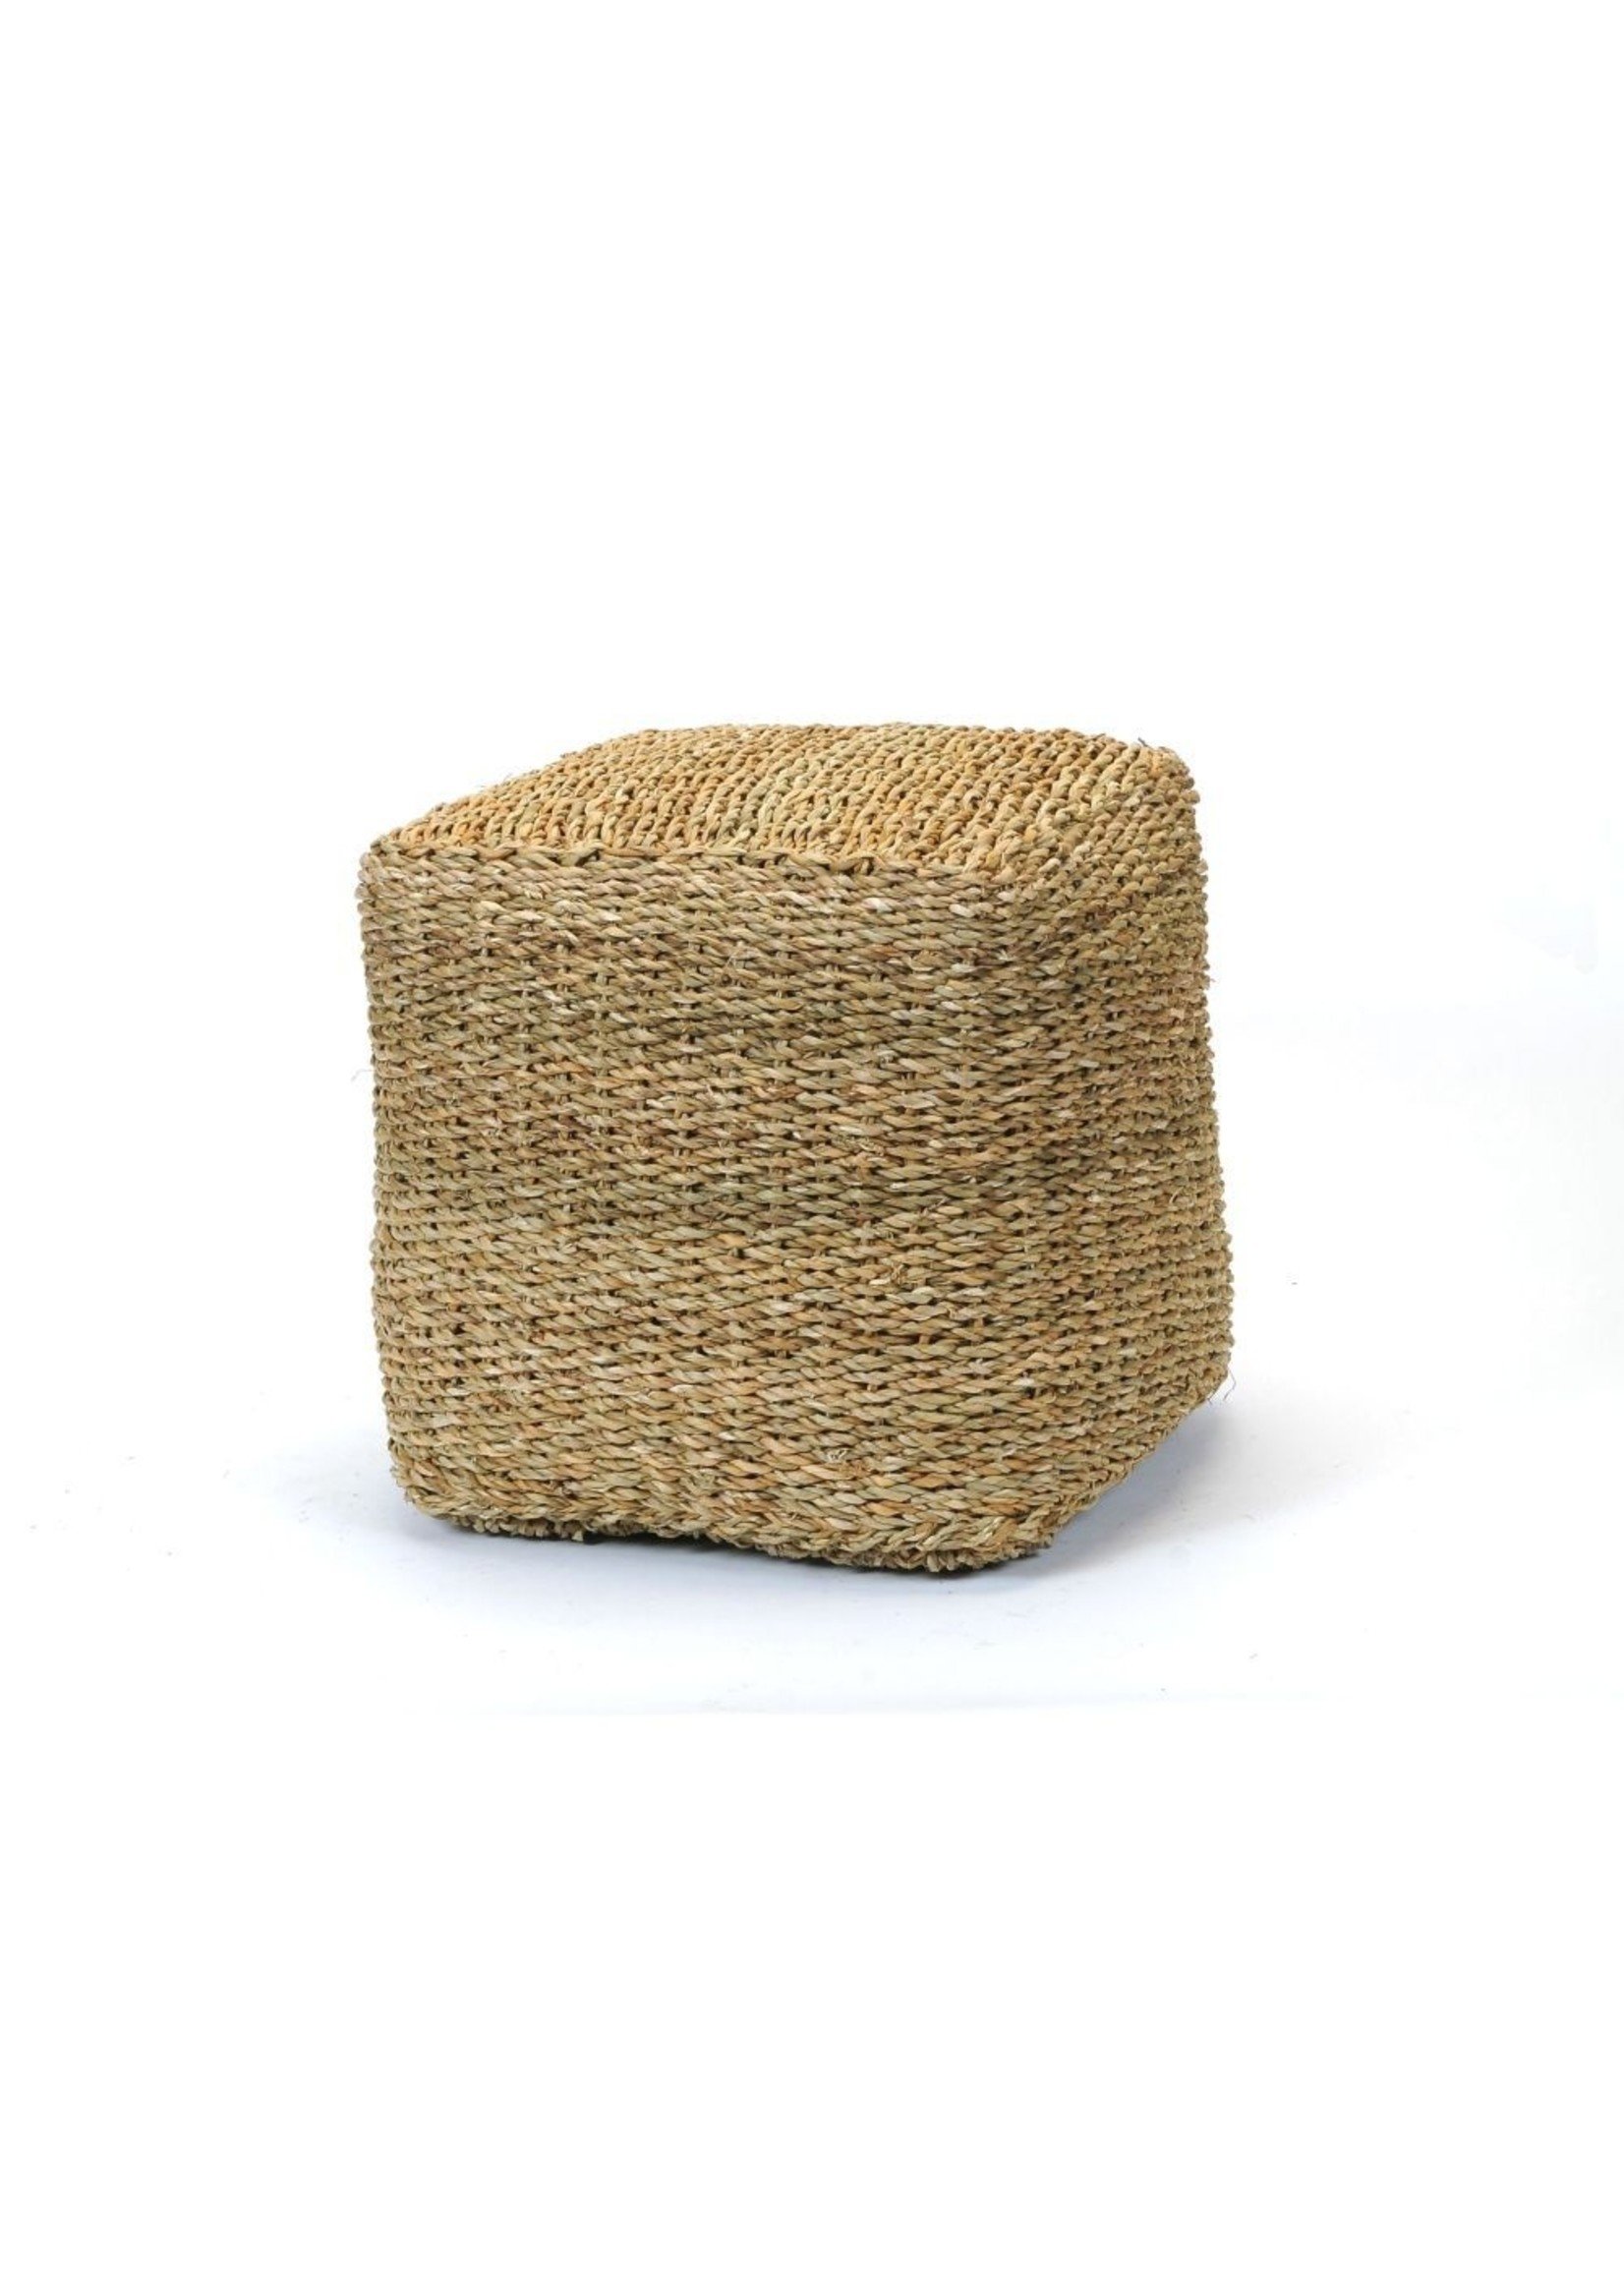 seagrass cube pouf ottoman